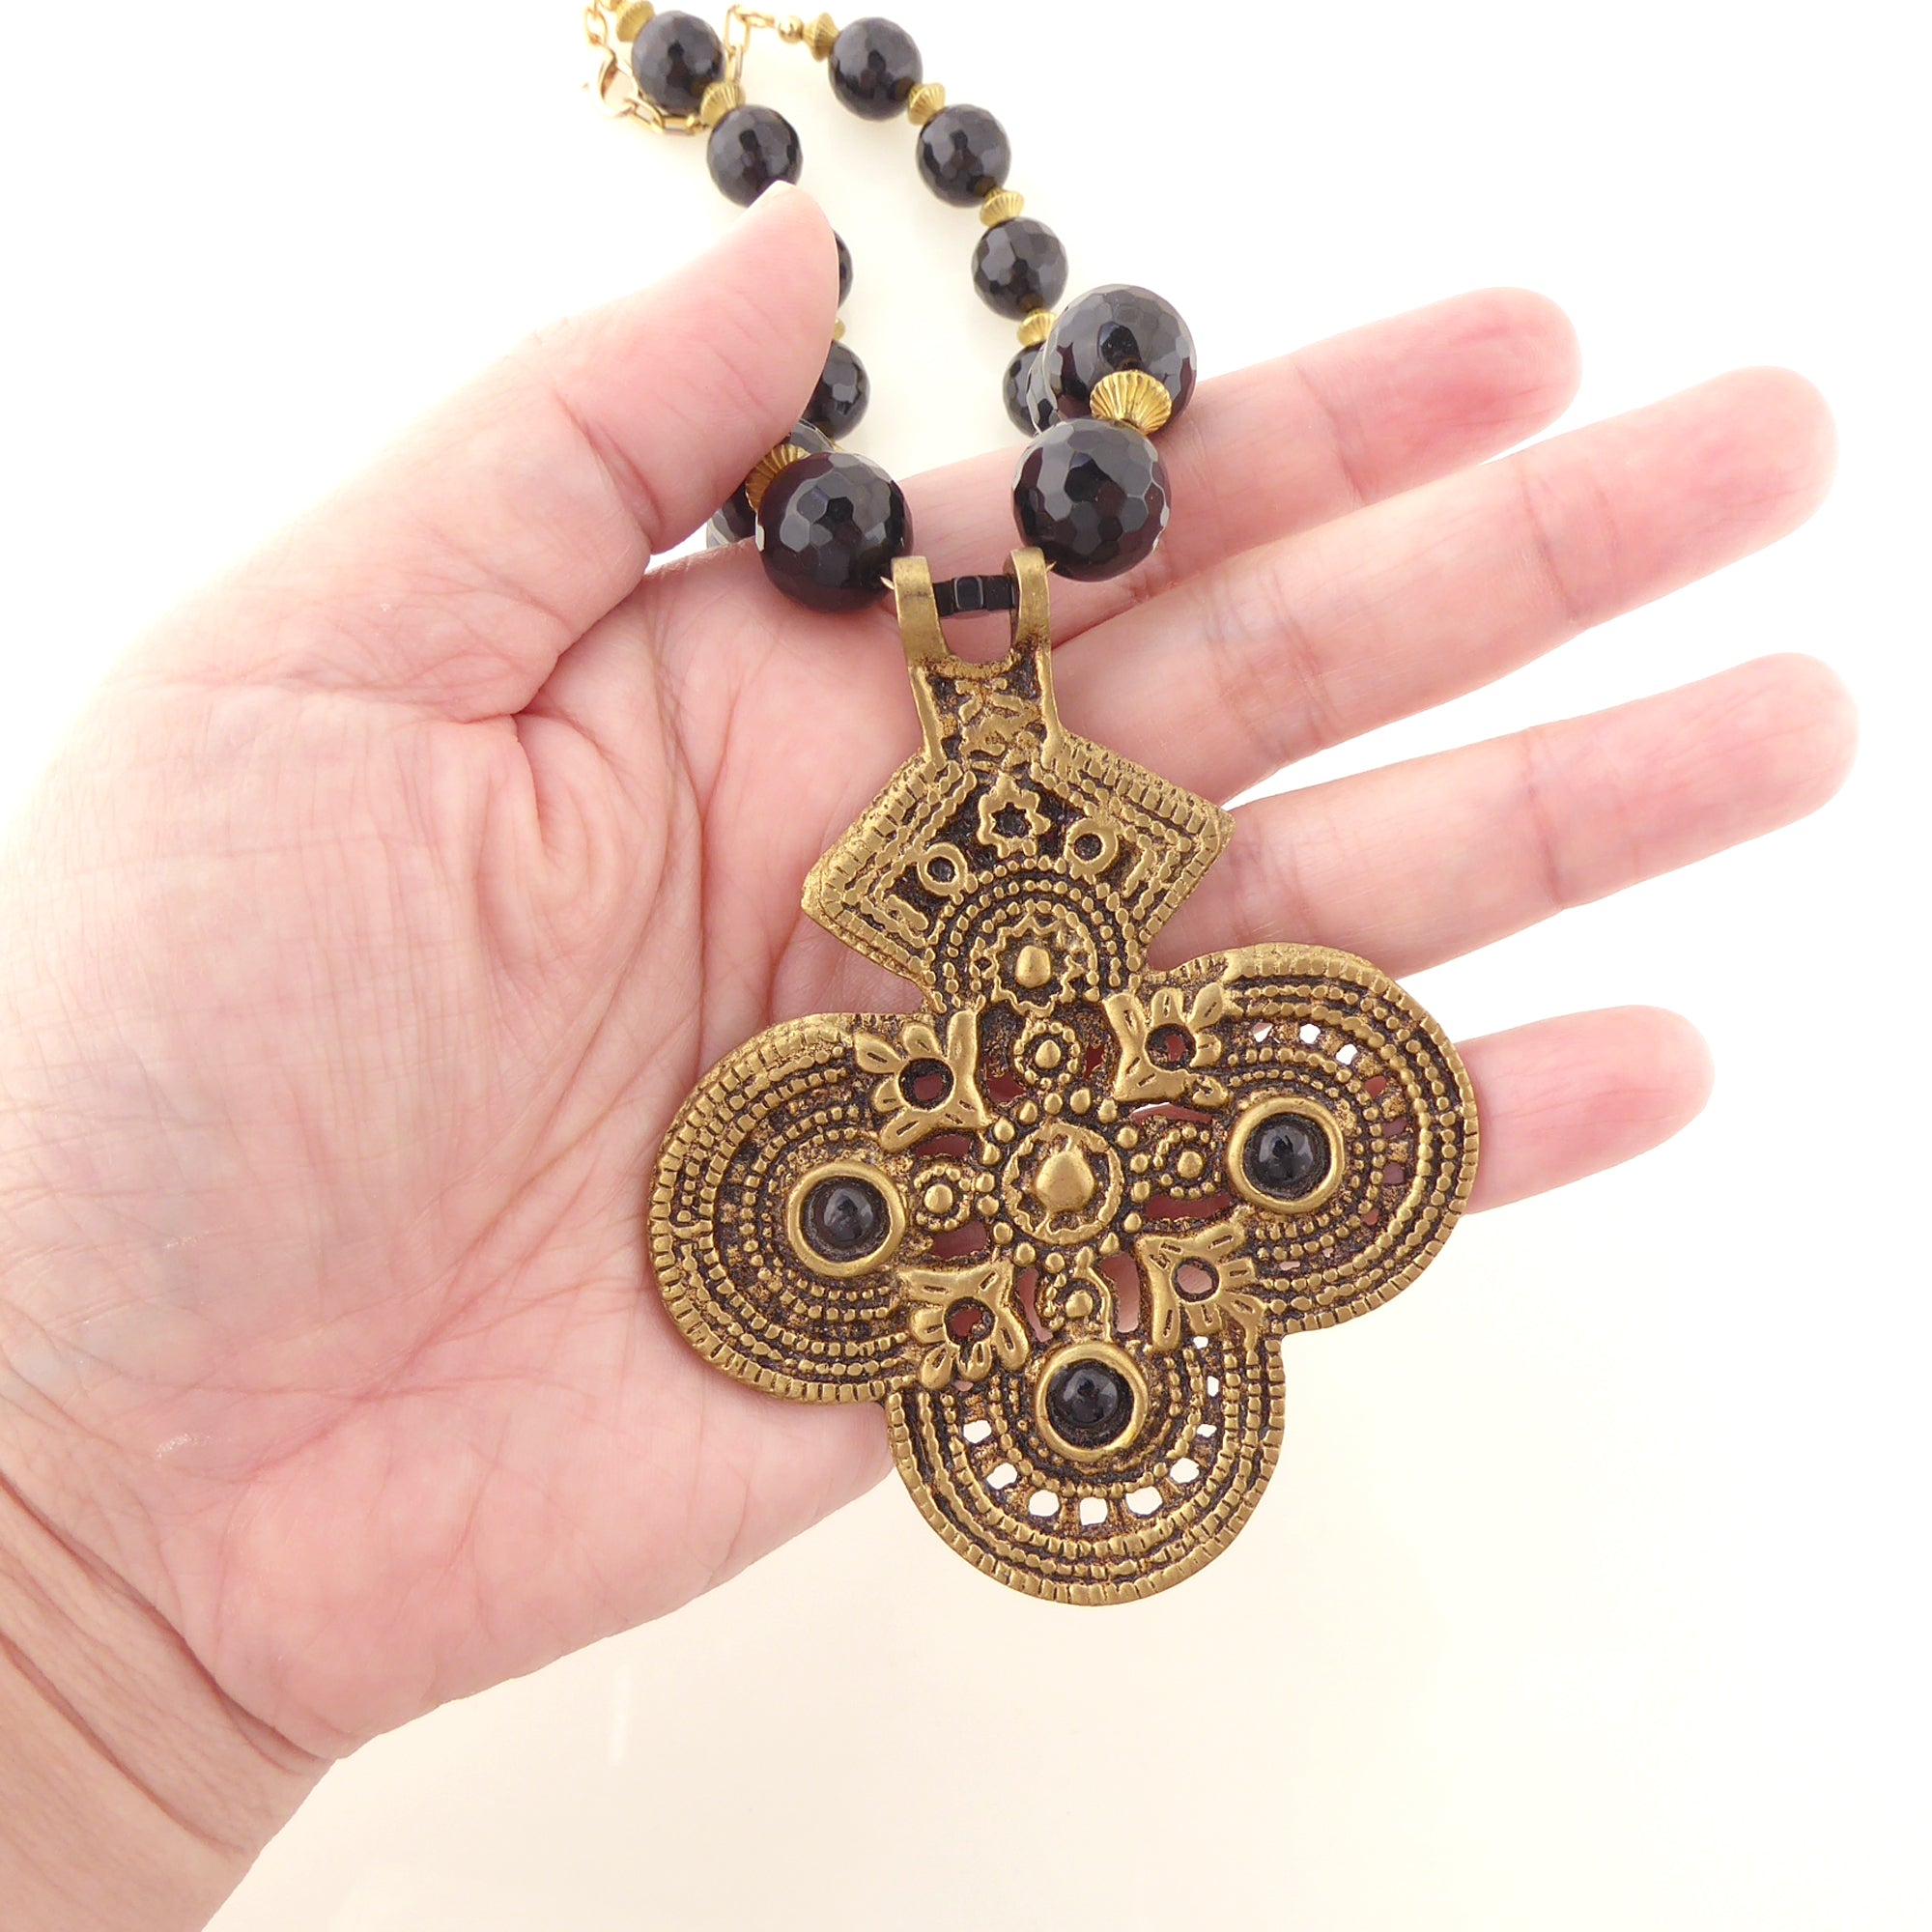 Black onyx and brass cross necklace by Jenny Dayco 6